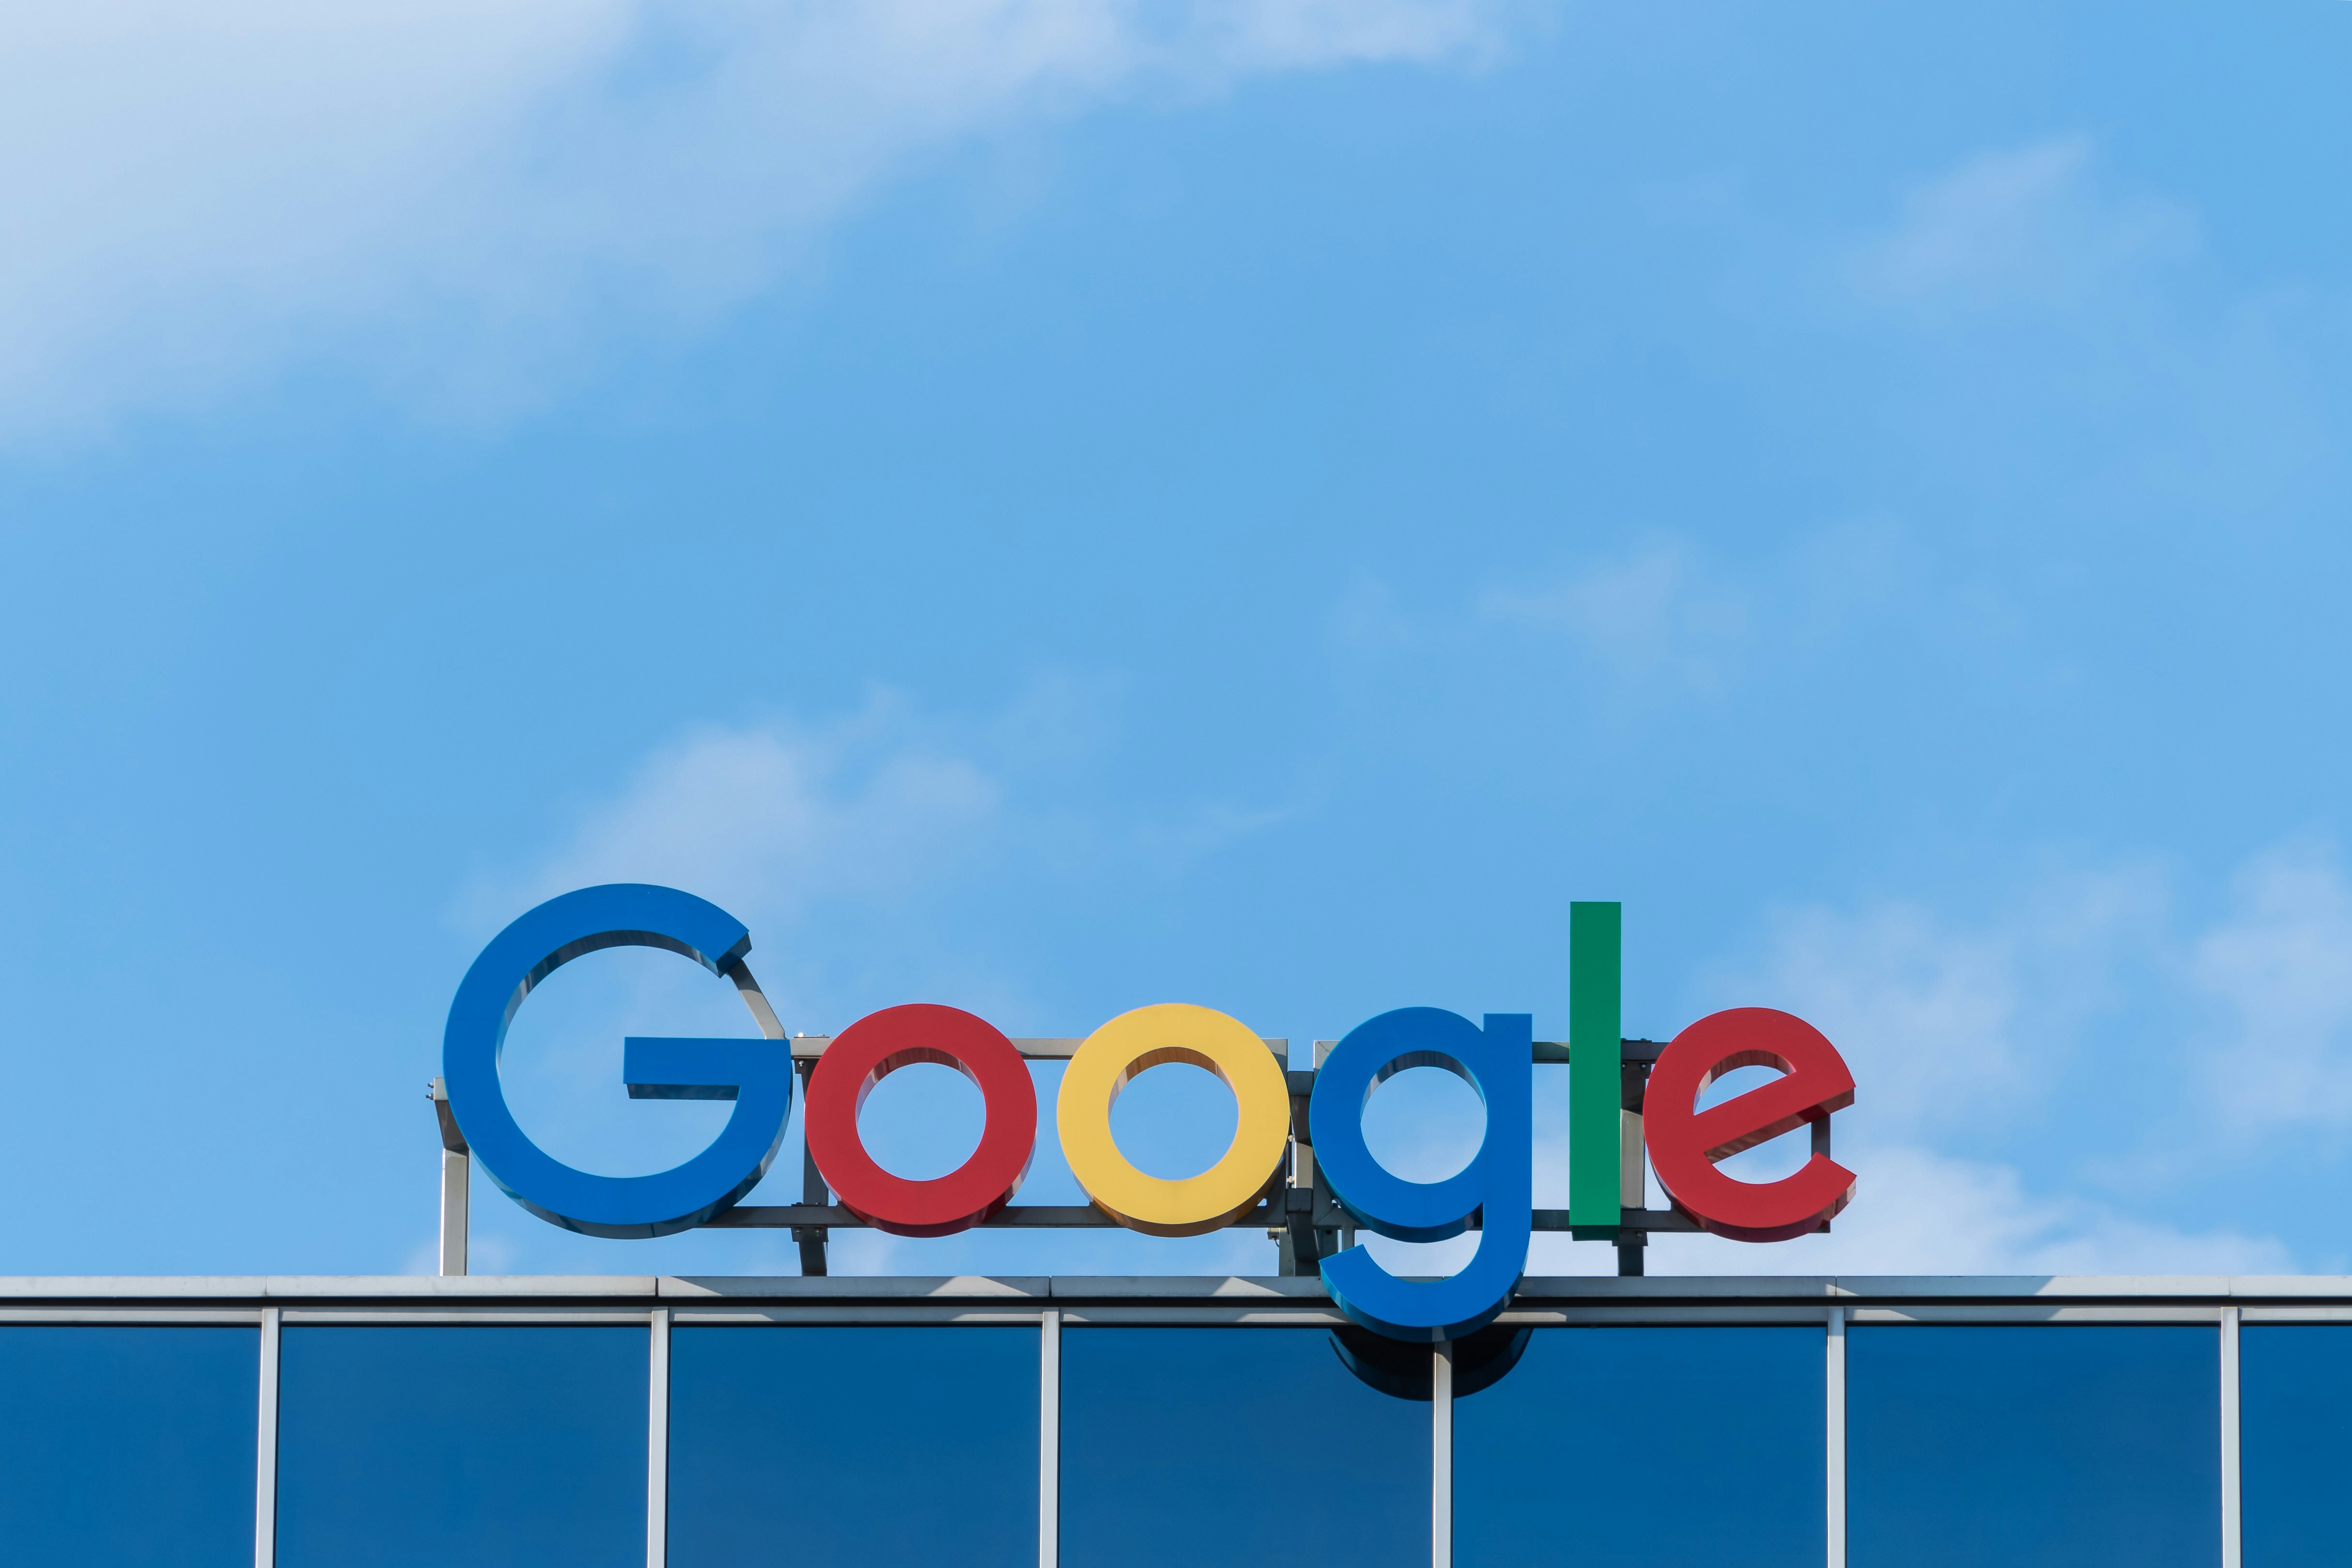 Google : Singapour dispose d'un potentiel élevé pour le développement de technologies d'intelligence artificielle